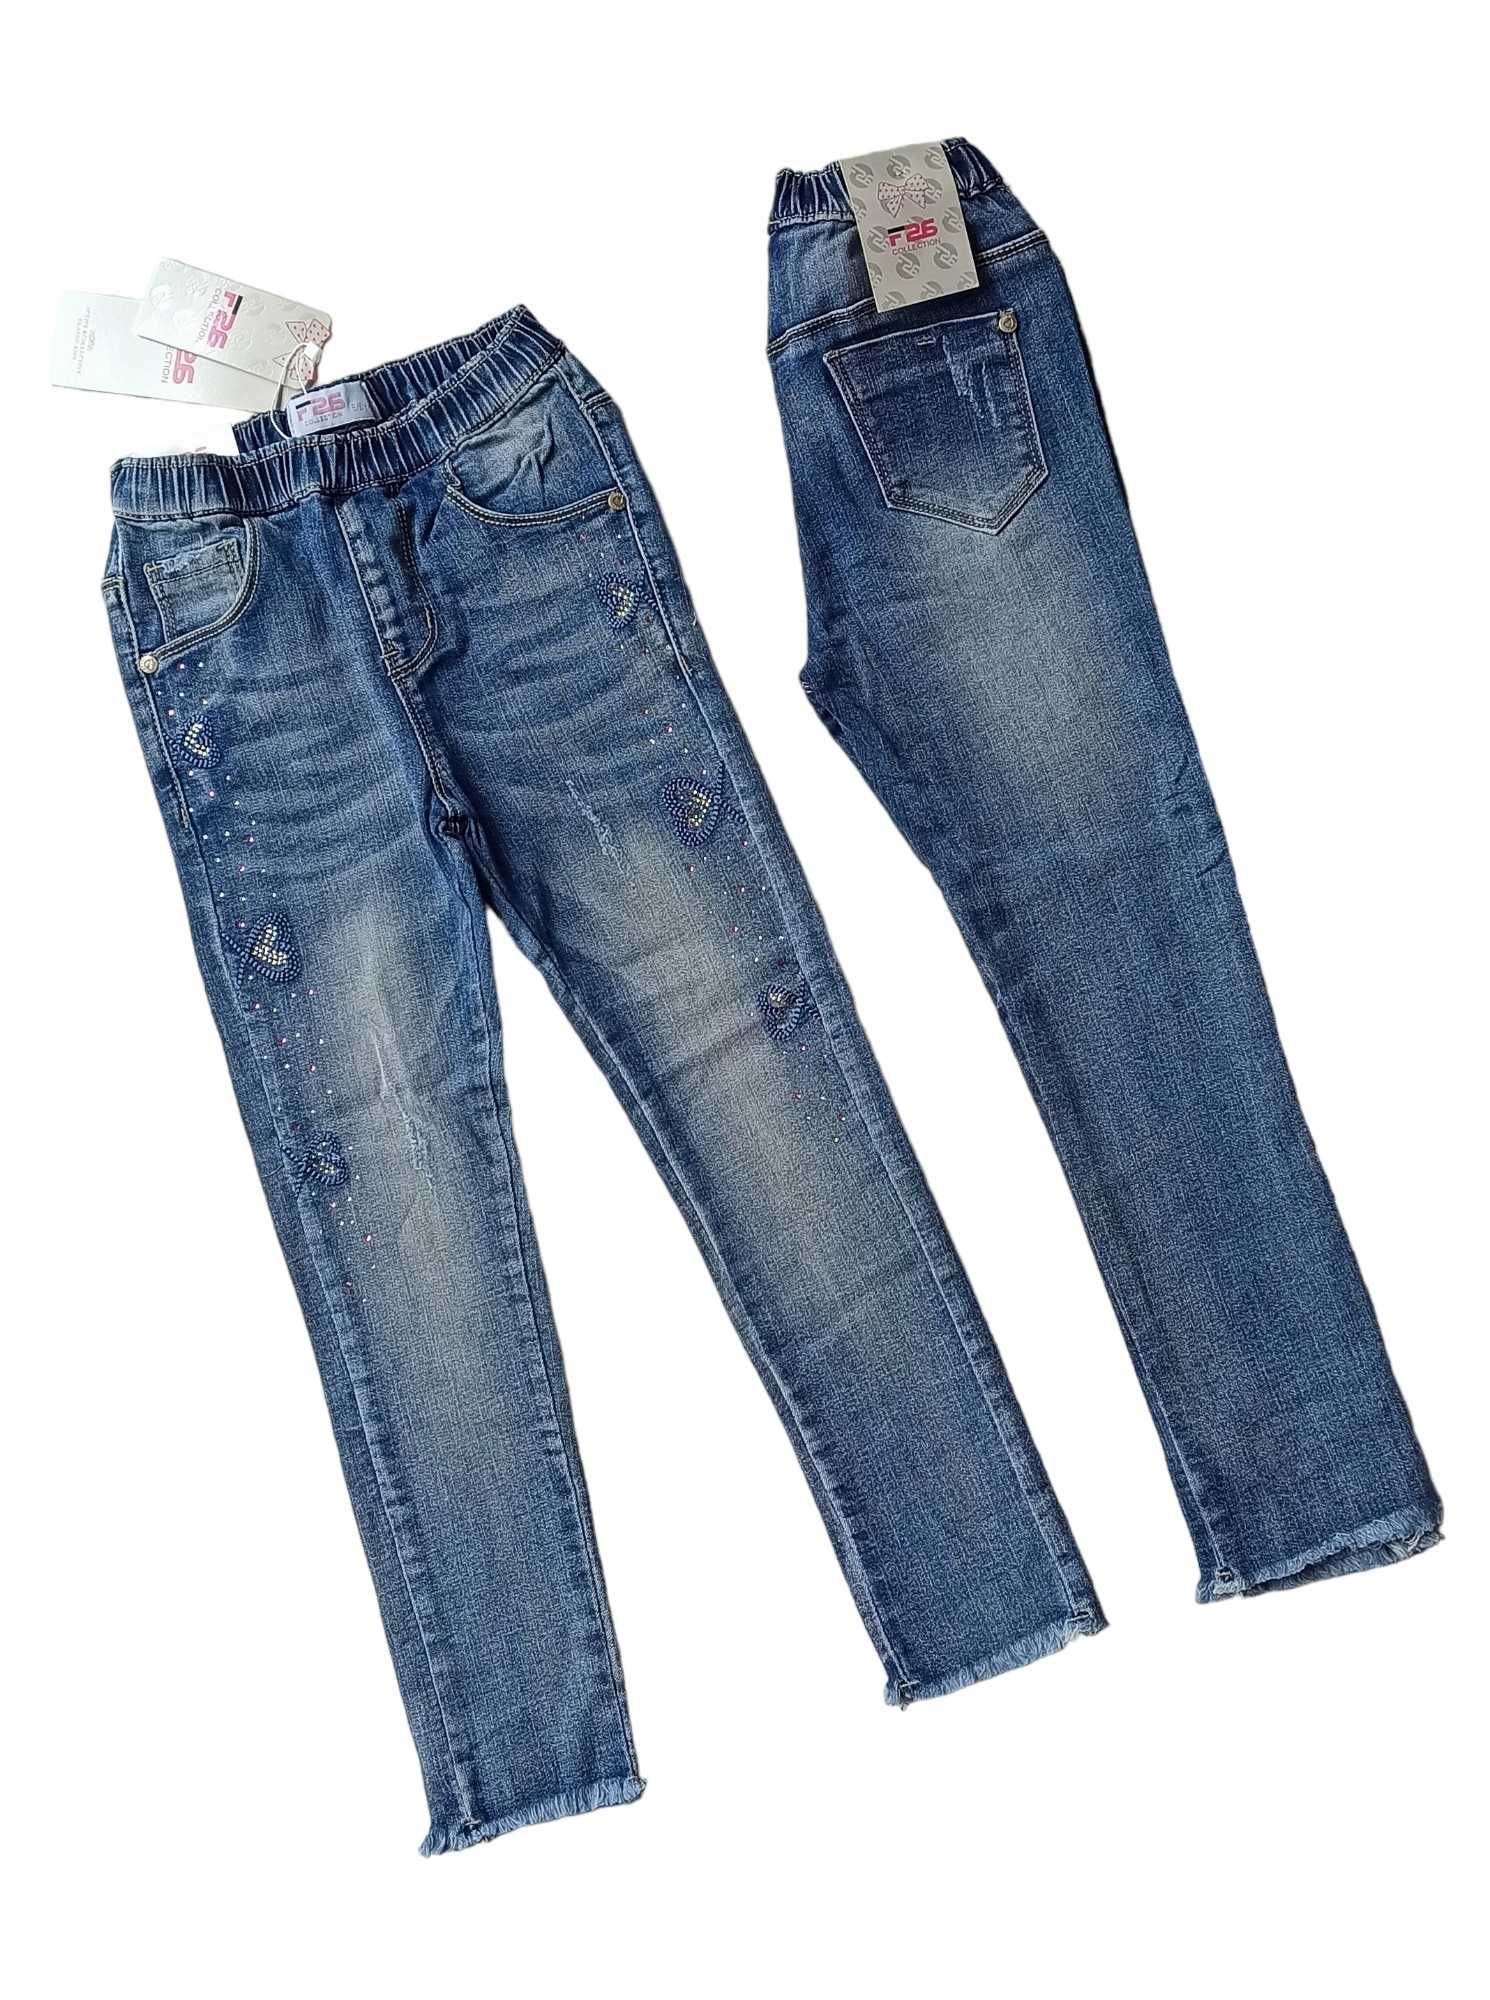 Spodnie jeans dla dziewczynki na gumce nowy 122-128